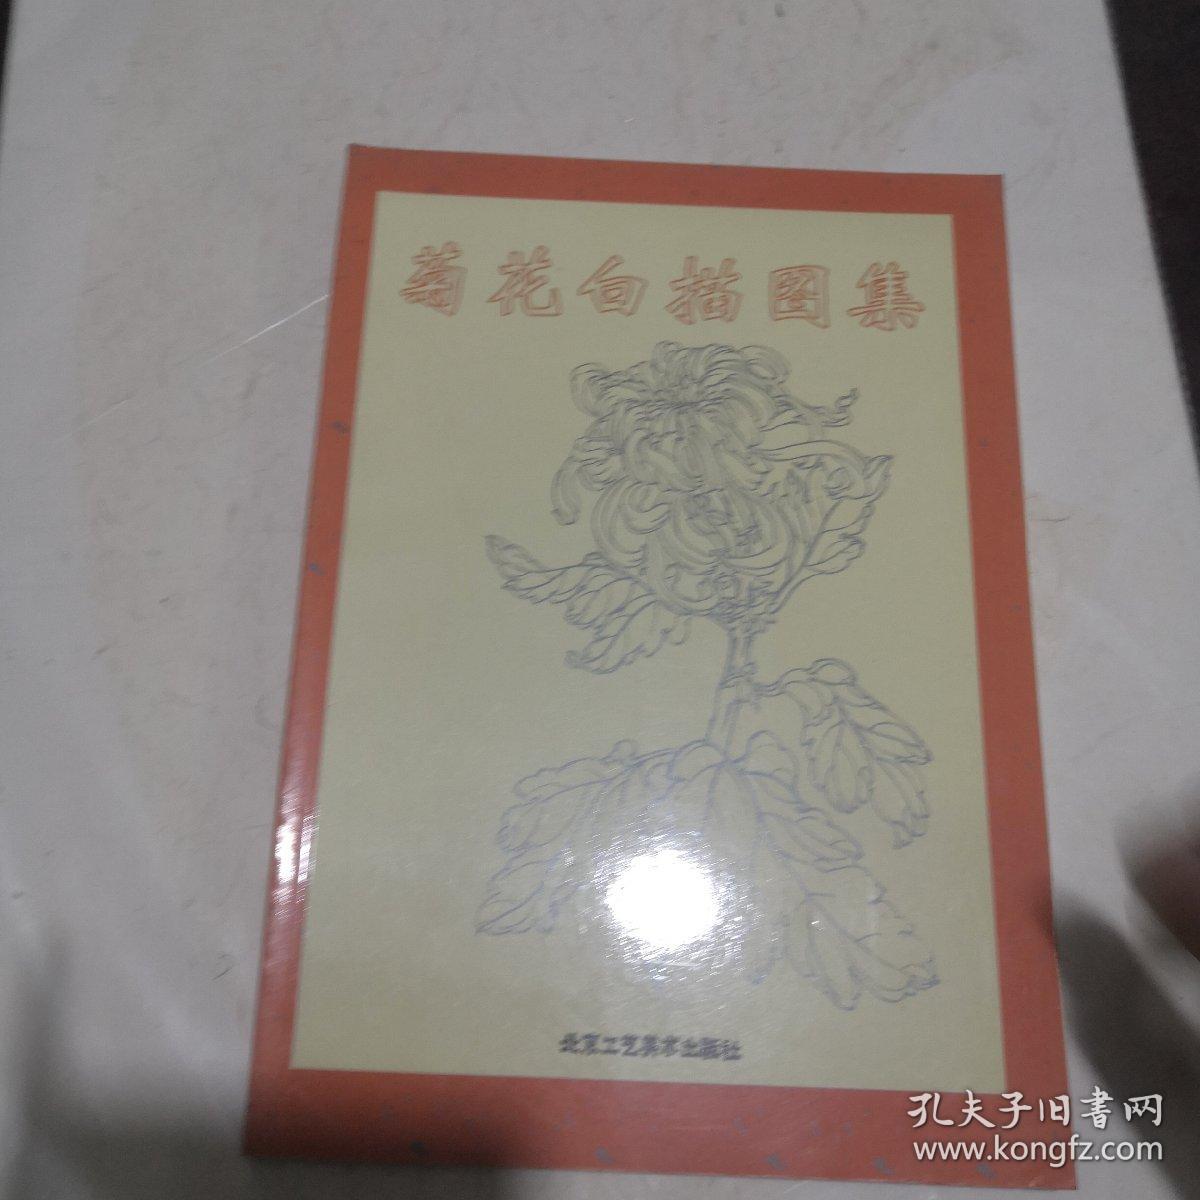 菊花白描图集/中国传统工艺美术资料丛书